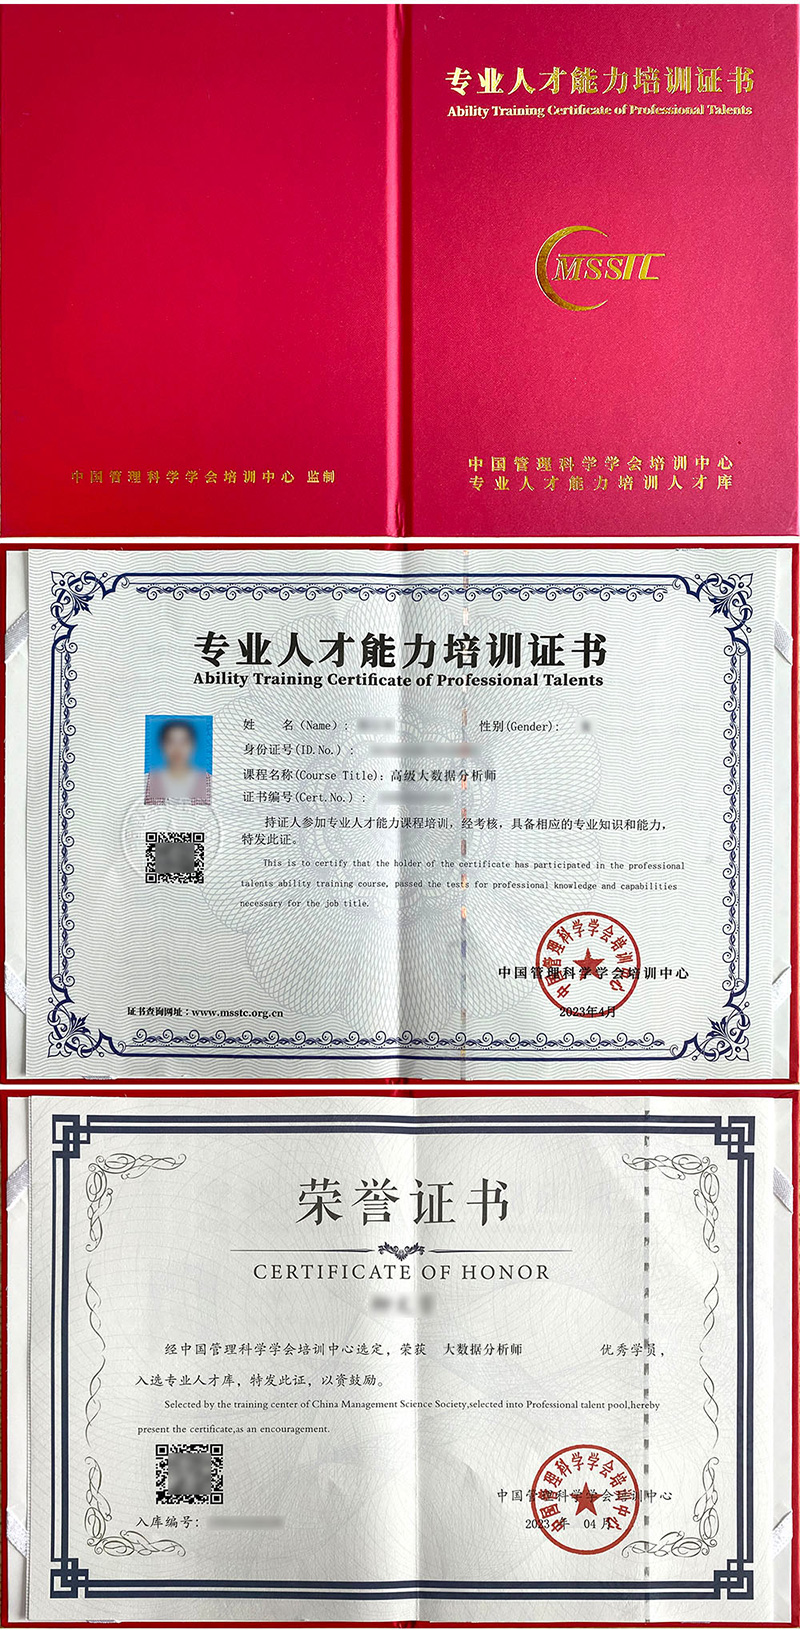 中国管理科学学会培训中心 专业人才能力培训证书 大数据分析师证证书样本